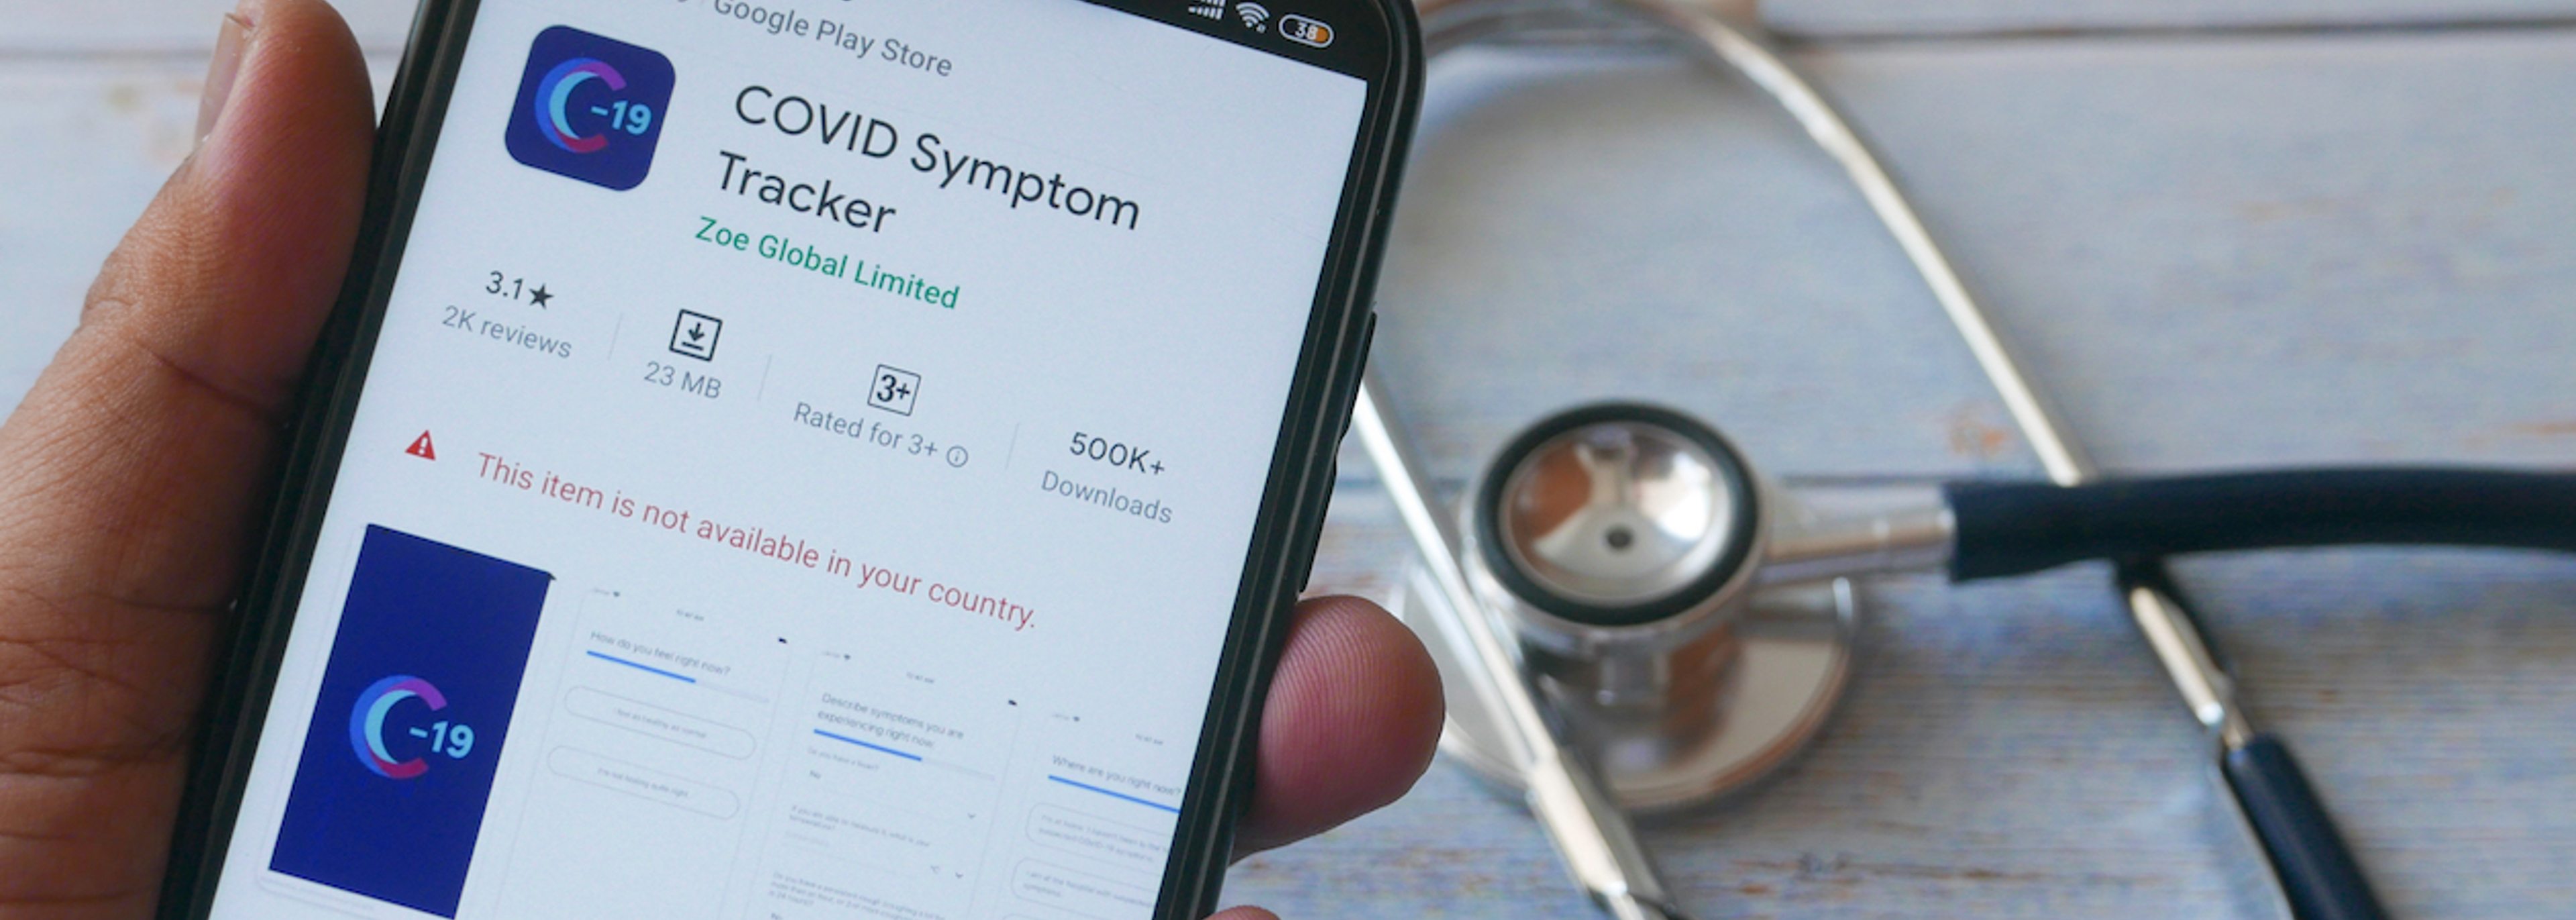 Symptom tracker app to expand its reach